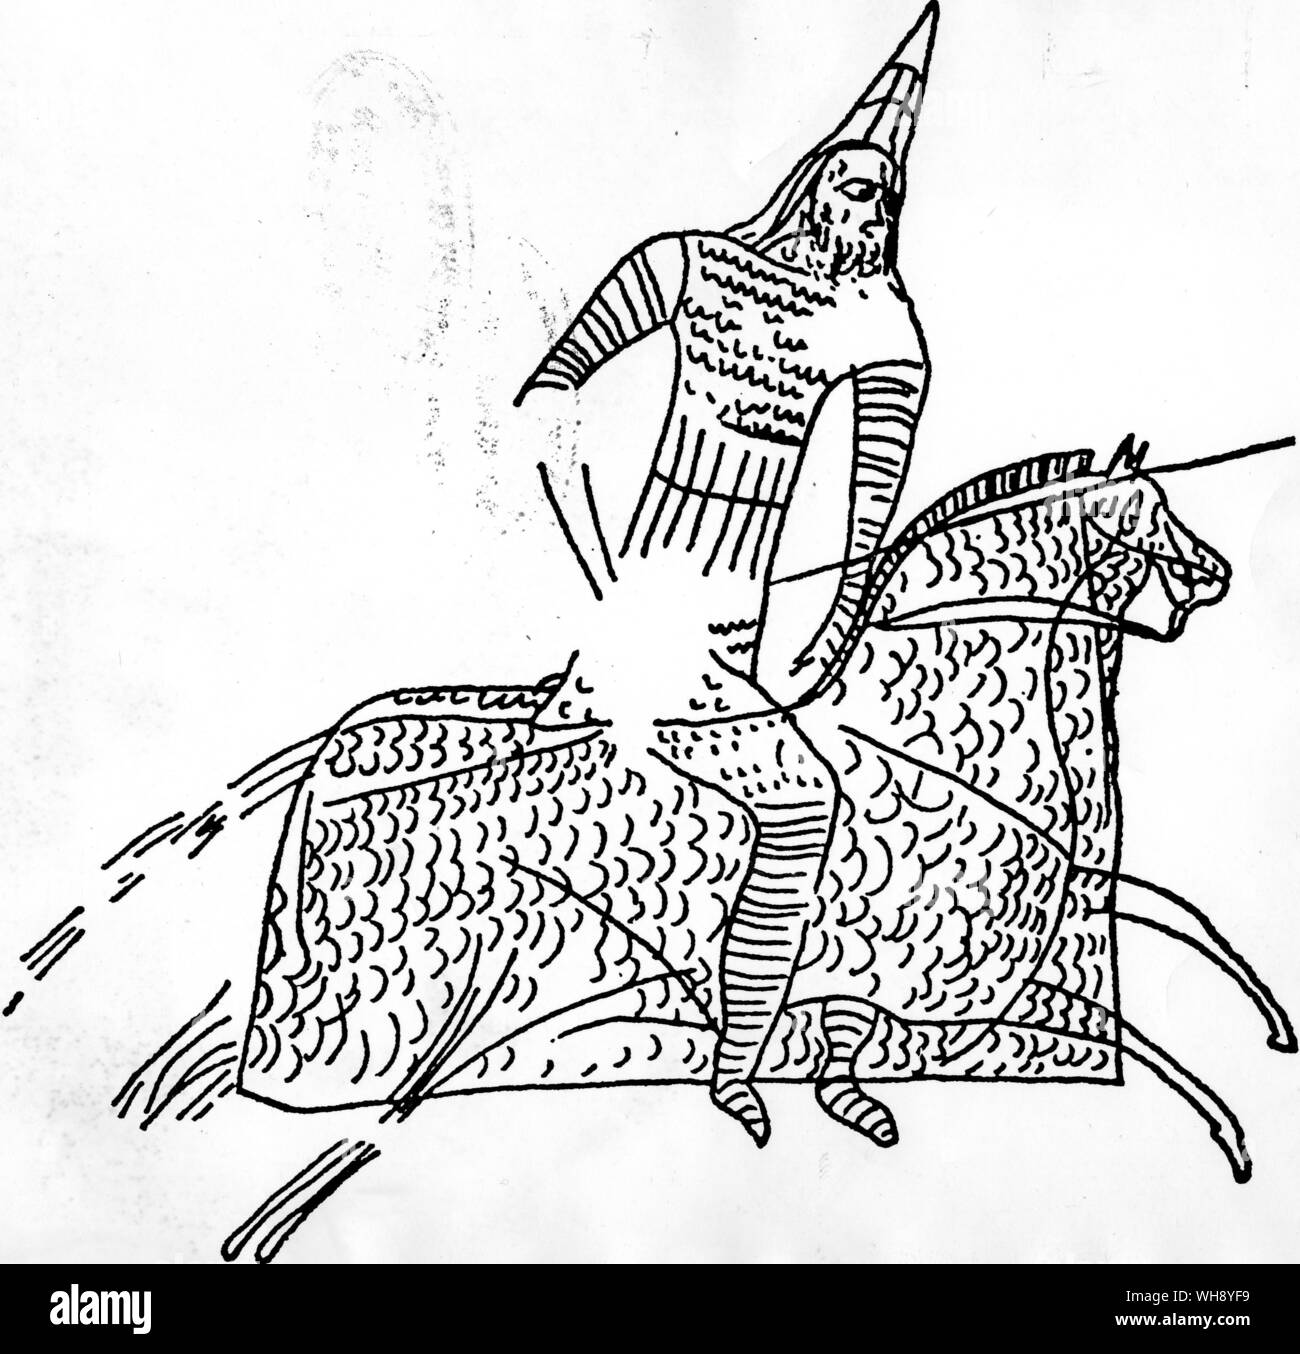 Chain Mail romano copiados de fuentes asiáticas para proteger tanto al jinete y caballo un grafito de antes del tercer siglo D.C. Foto de stock